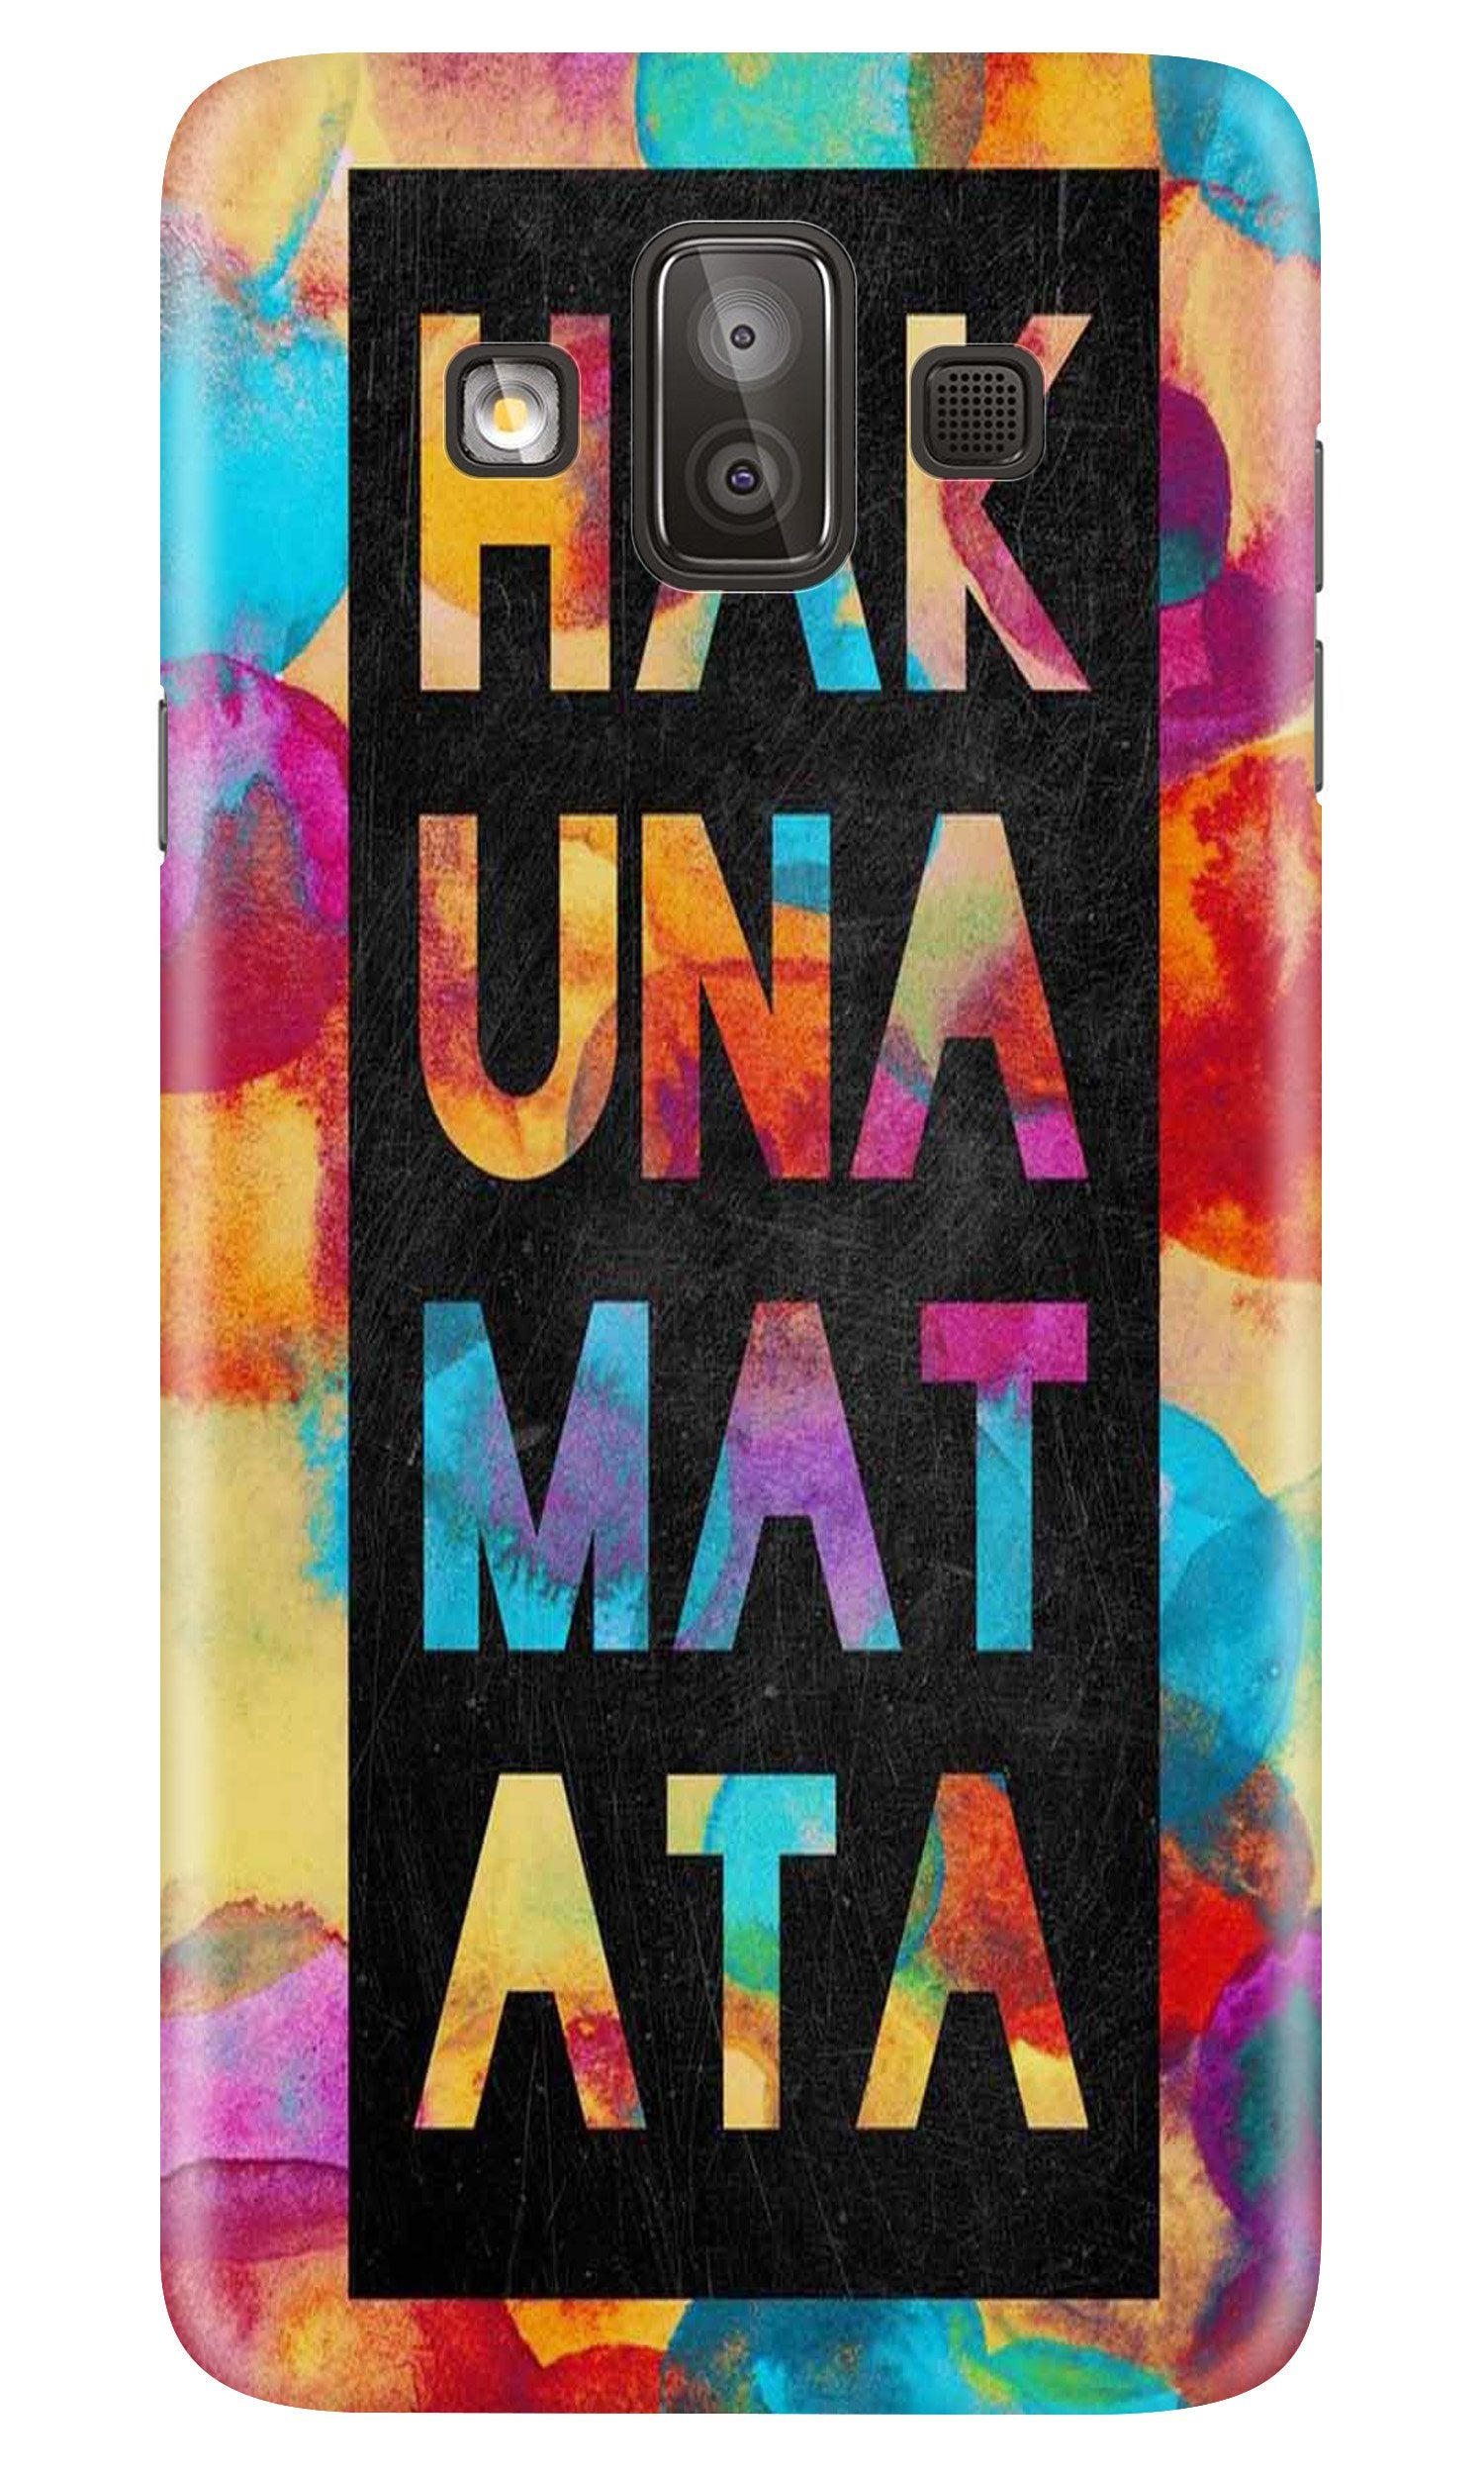 Hakuna Matata Mobile Back Case for Galaxy J7 Duo (Design - 323)